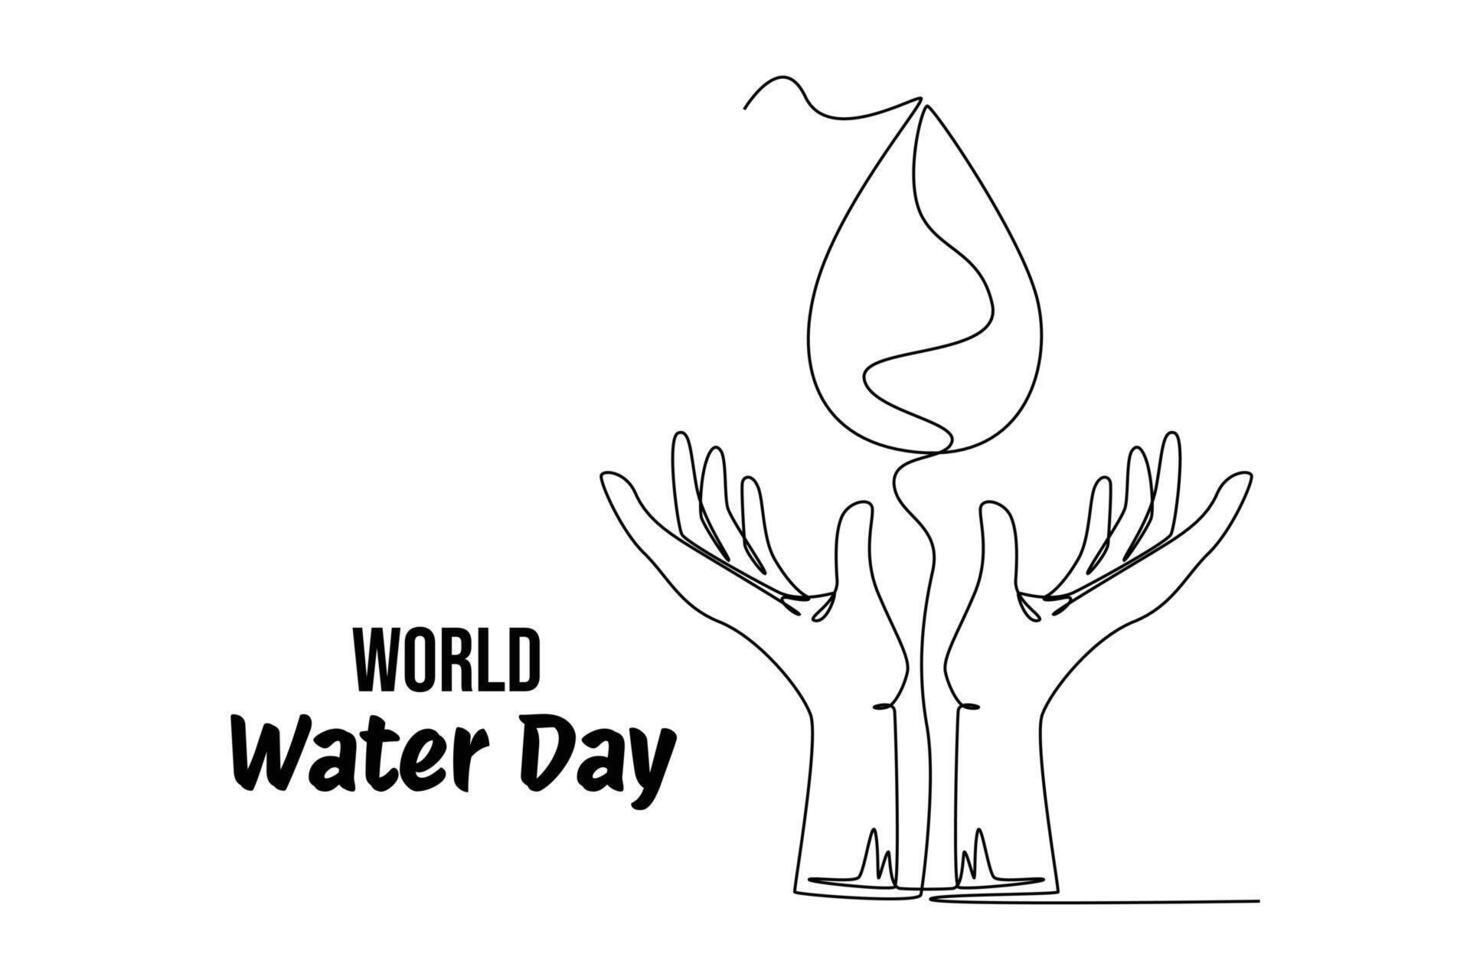 einer kontinuierlich Linie Zeichnung von Welt Wasser Tag Konzept. Gekritzel Vektor Illustration im einfach linear Stil.